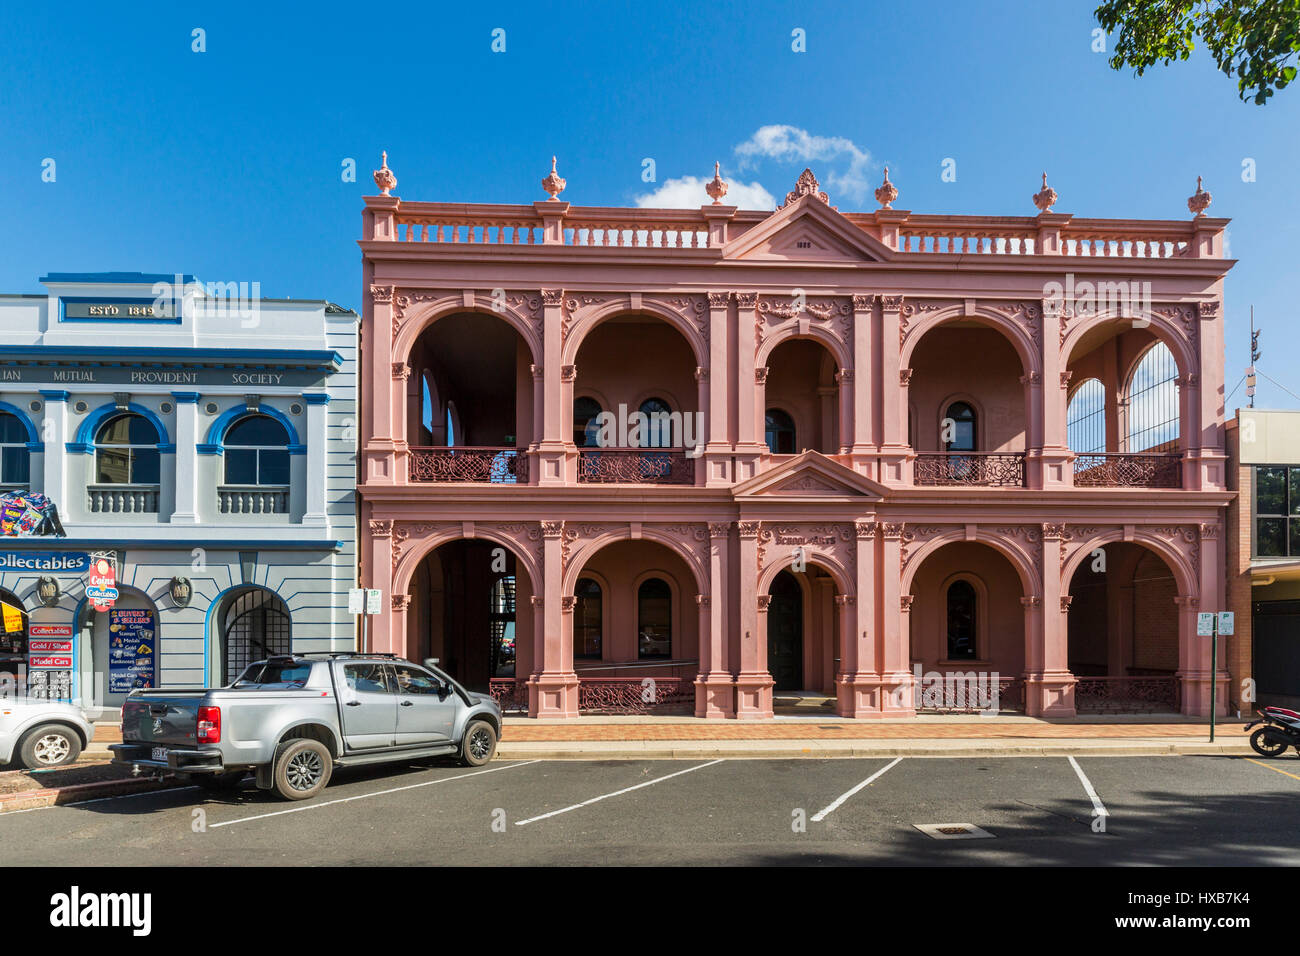 L'École de Bundaberg Arts Building sur Bourbong Street. Bundaberg, Queensland, Australie Banque D'Images